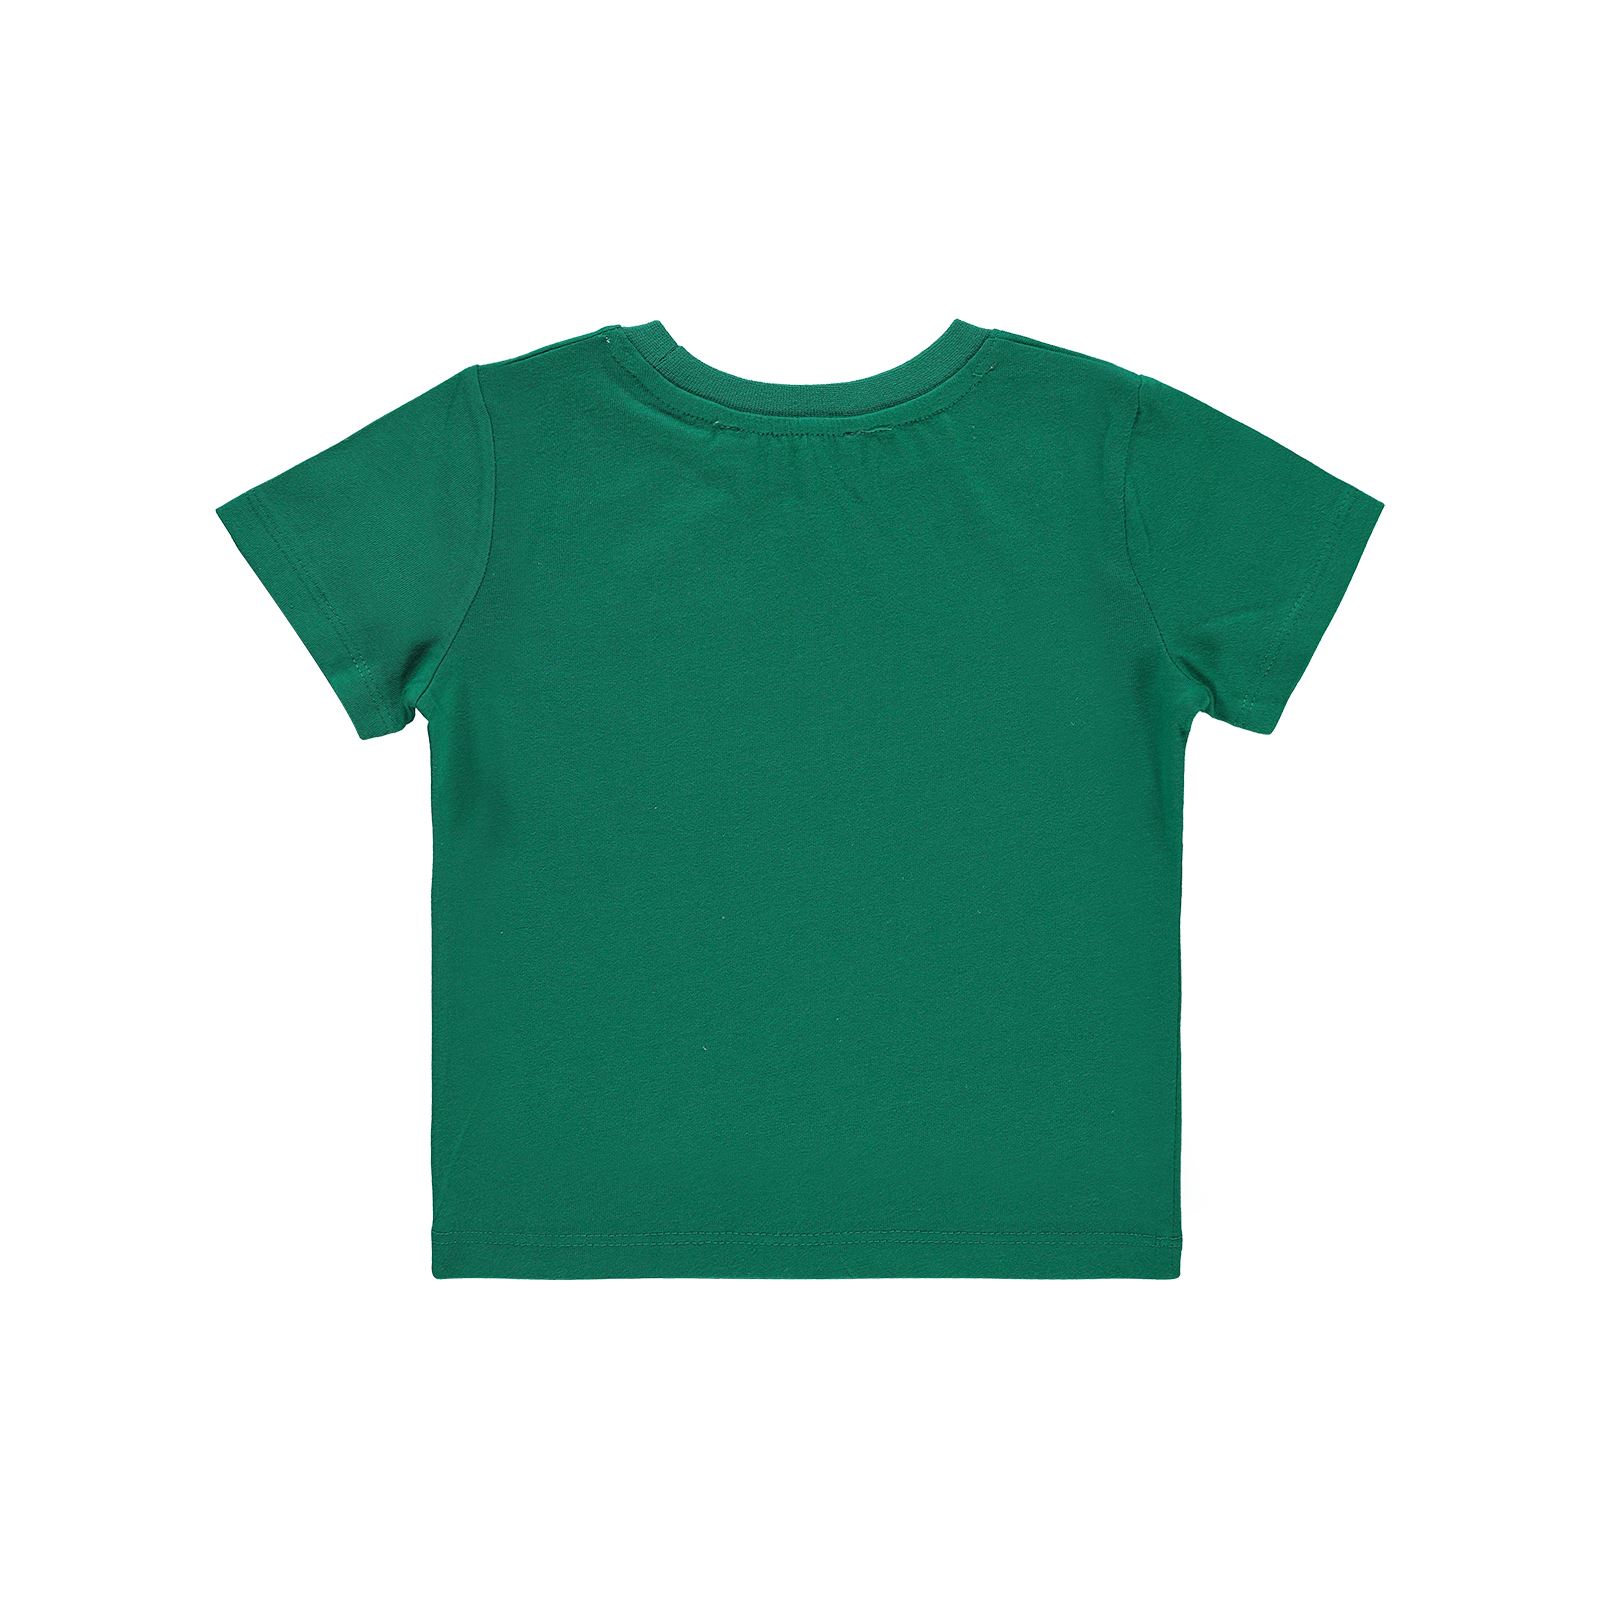 Small Socıety Erkek Çocuk Tişört 2-7 Yaş Koyu Yeşil